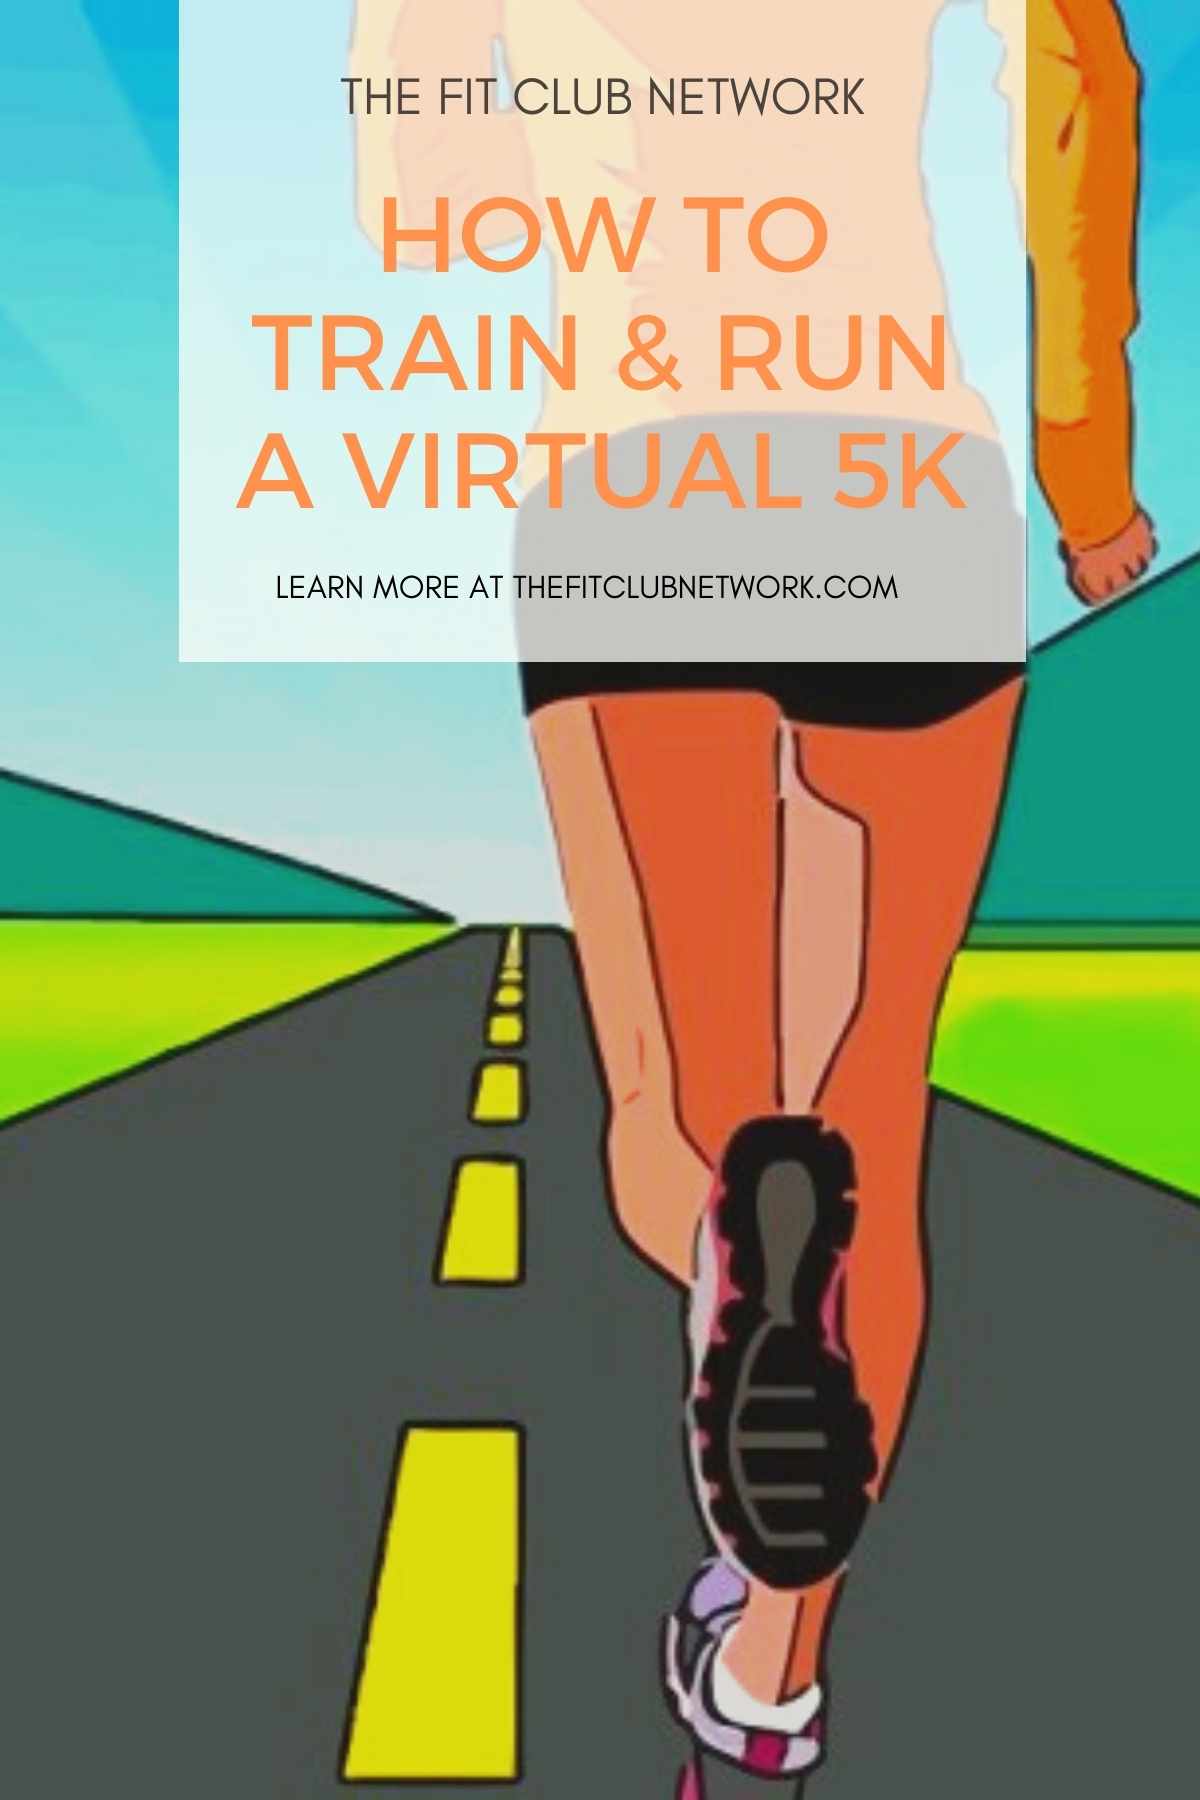 How to Train & Run a Virtual 5K